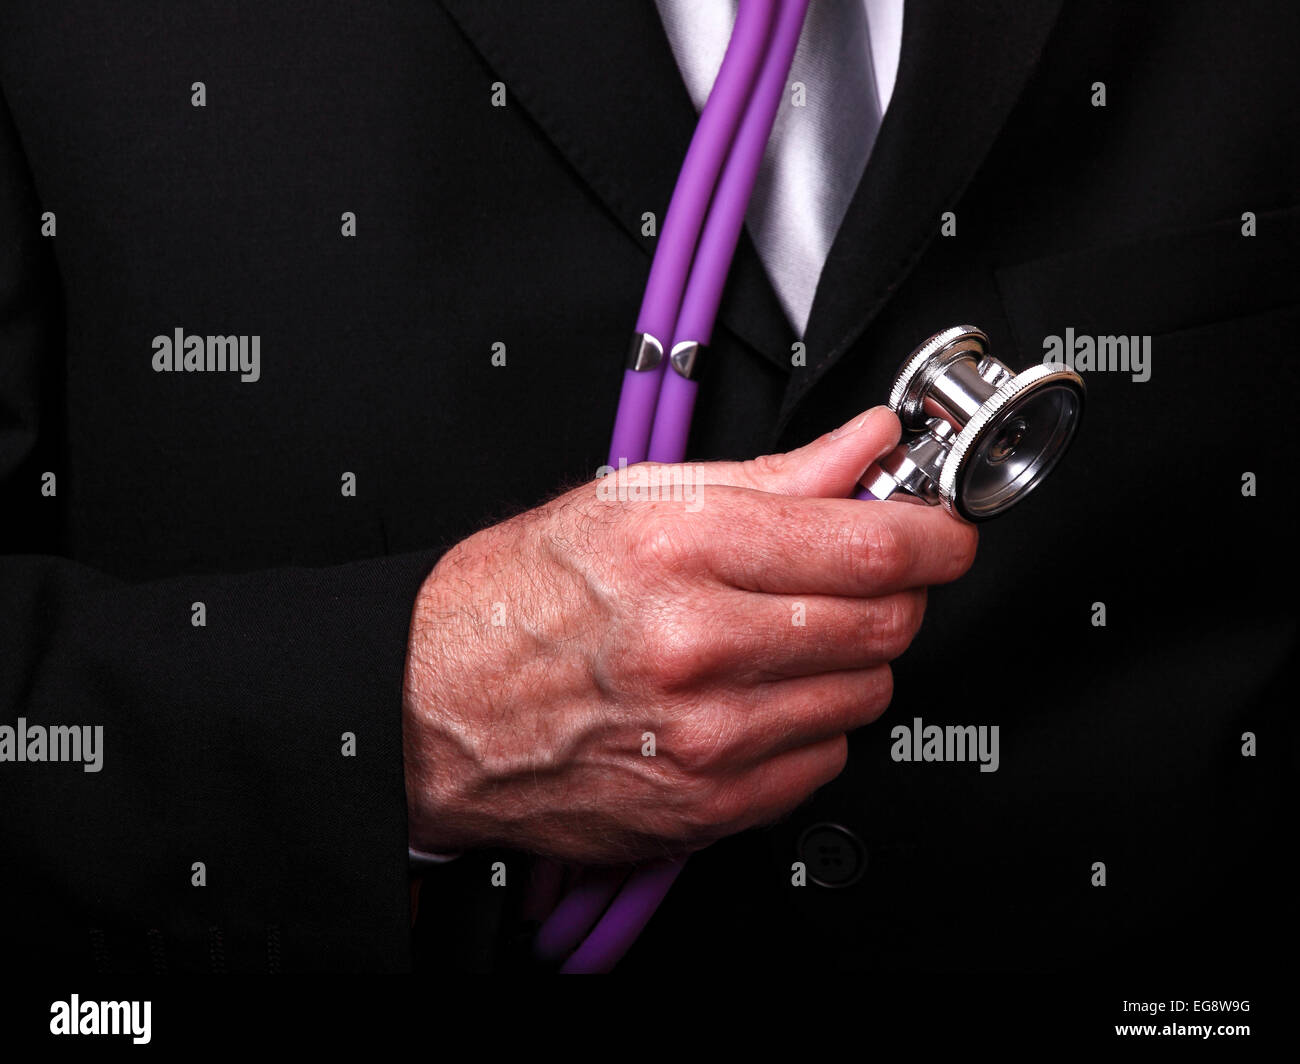 Man holding stethoscope Stock Photo